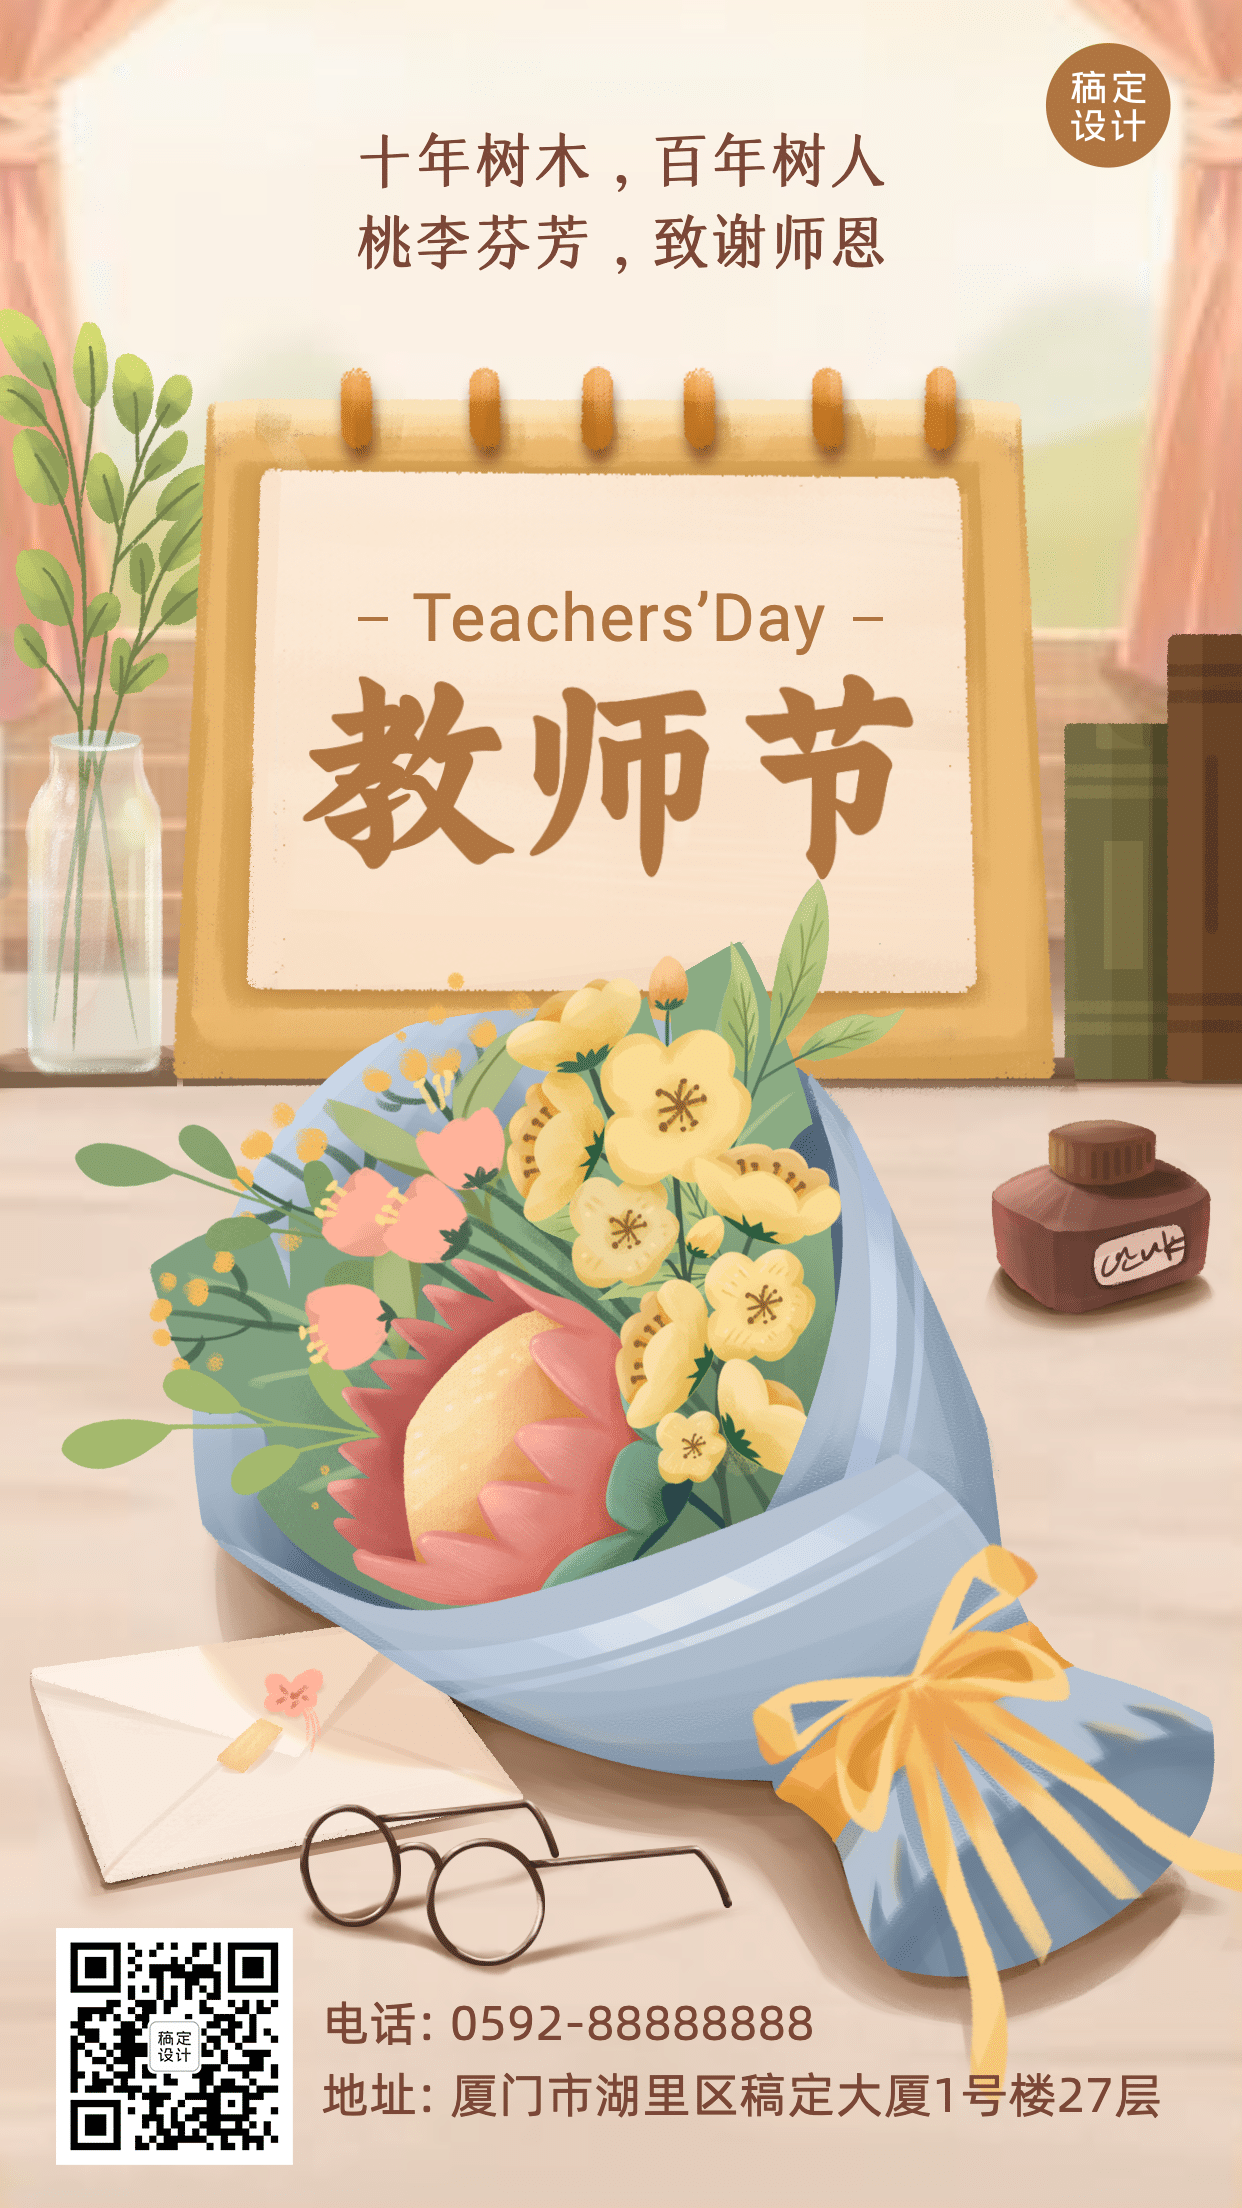 教师节快乐祝福鲜花手绘手机海报预览效果